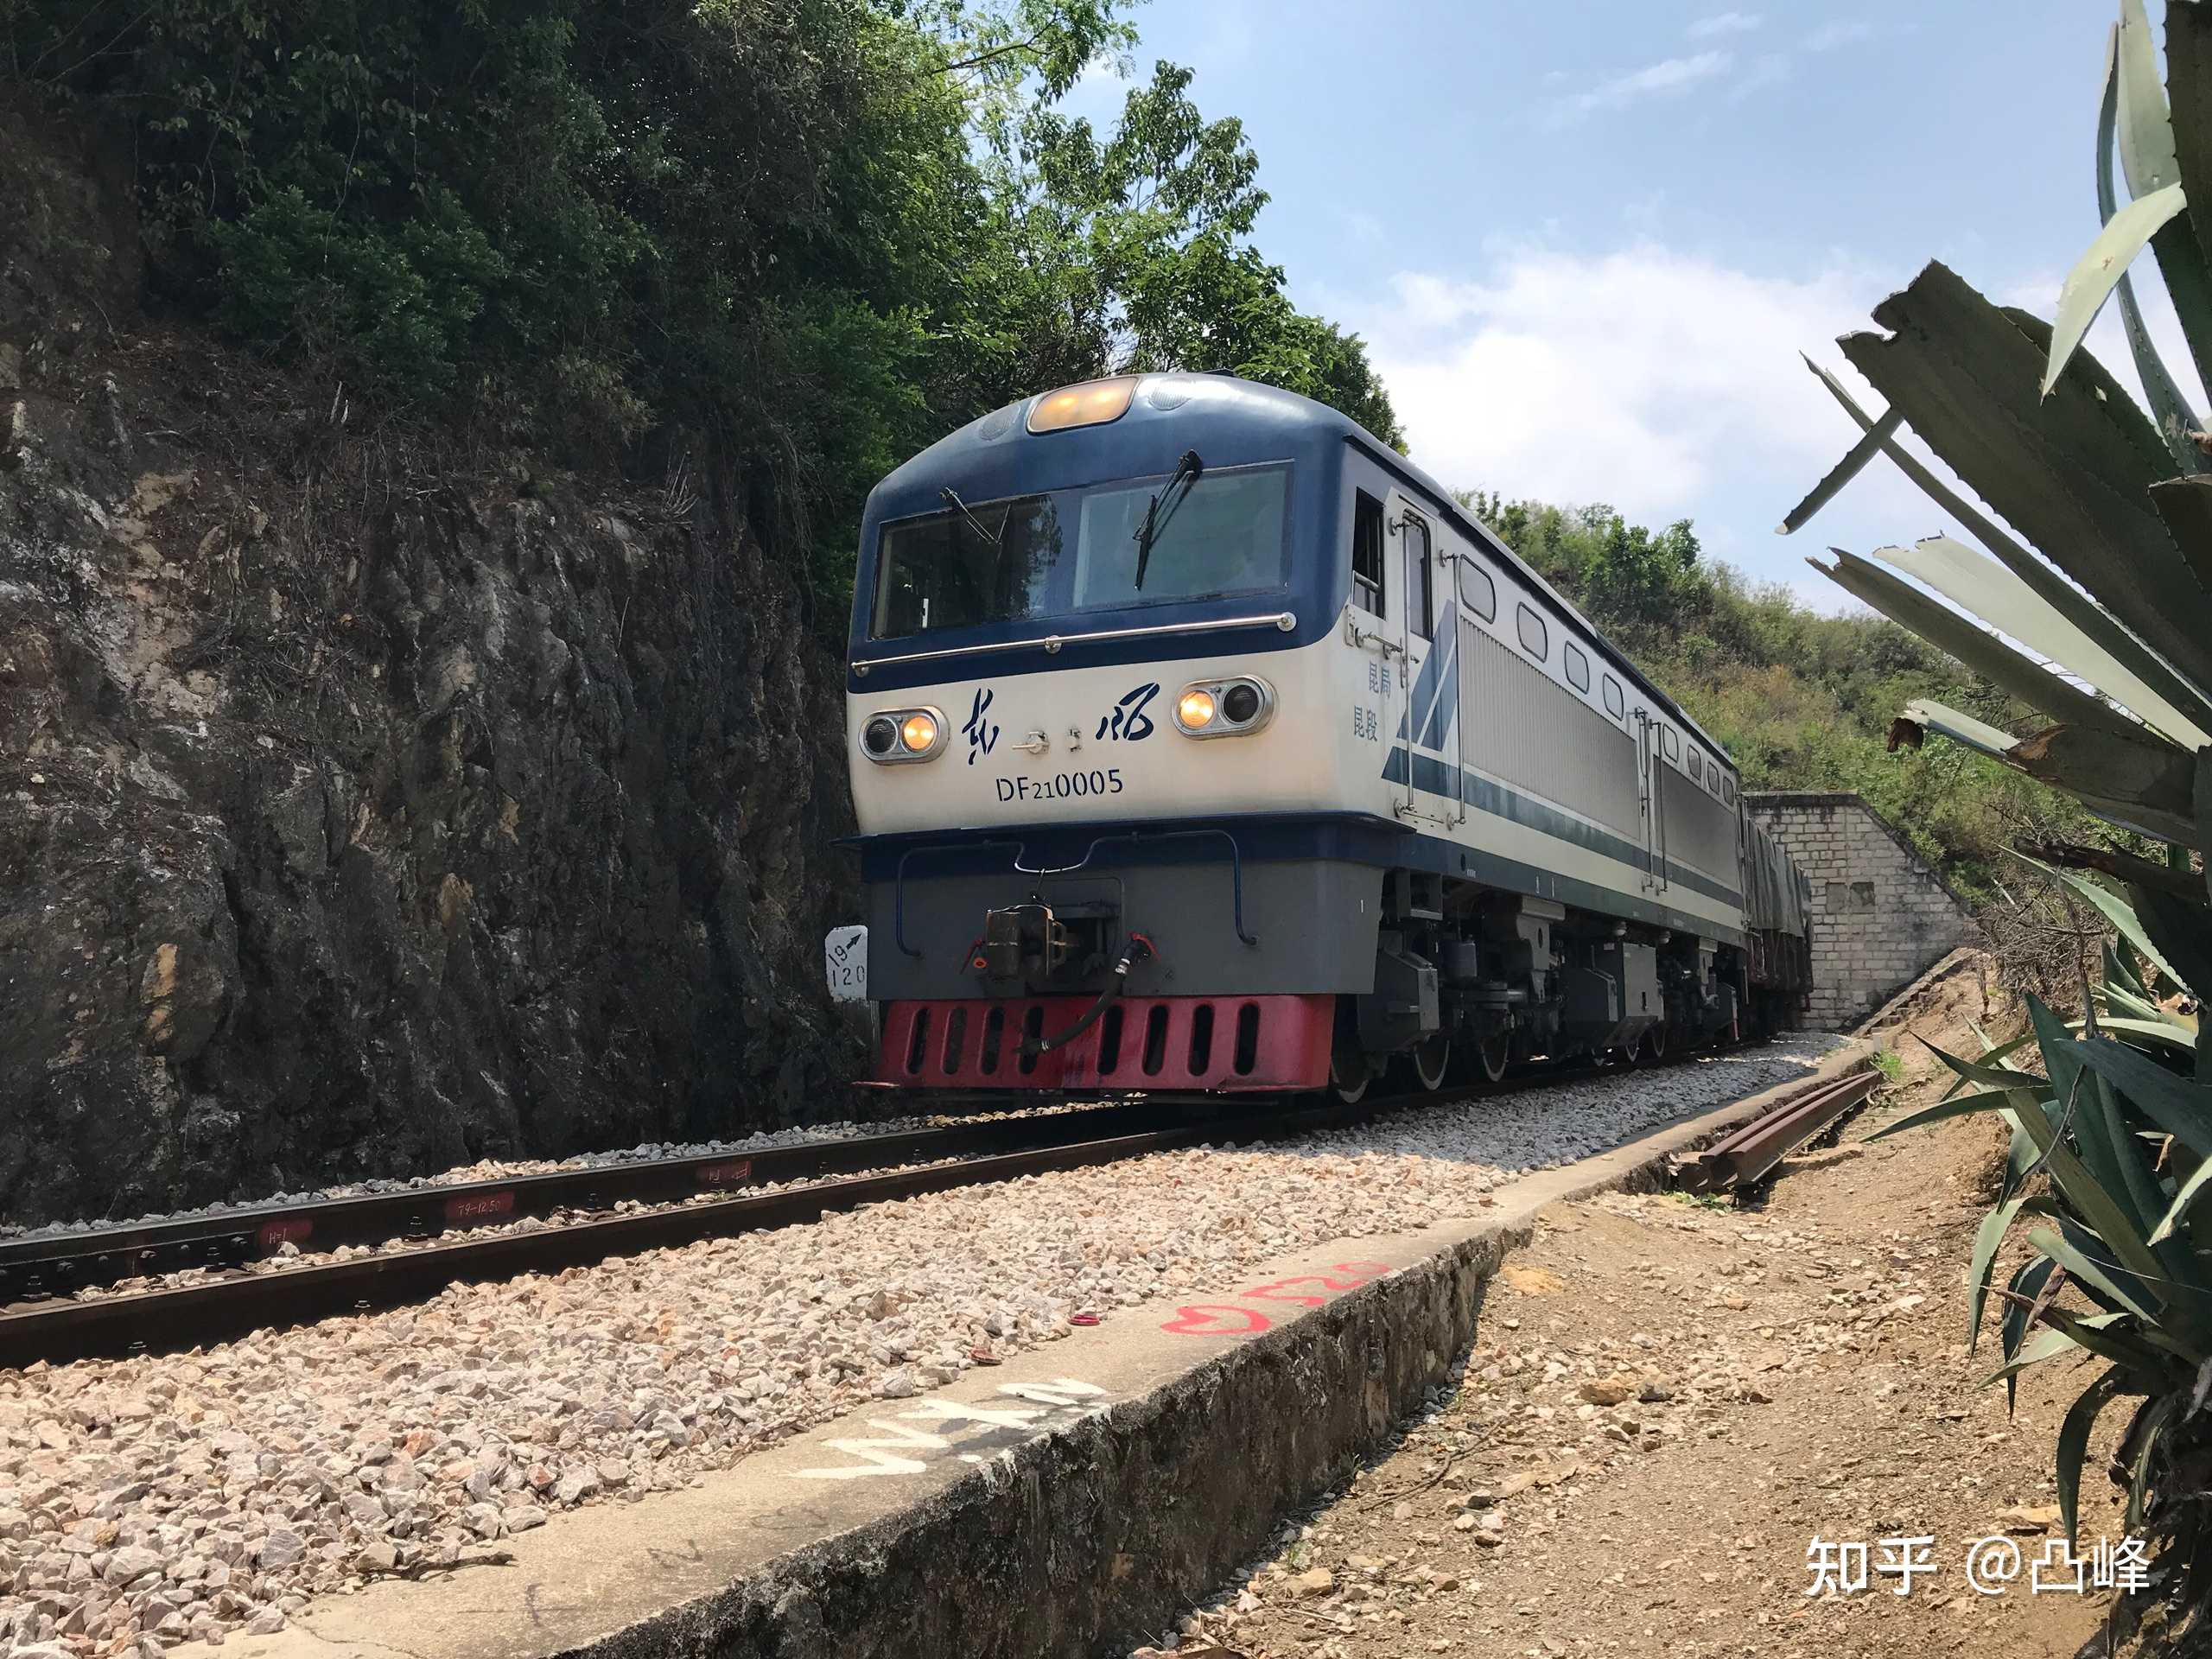 这两天云南米轨的2105号机车(df21-0005)霸占了各位火车迷的屏幕.